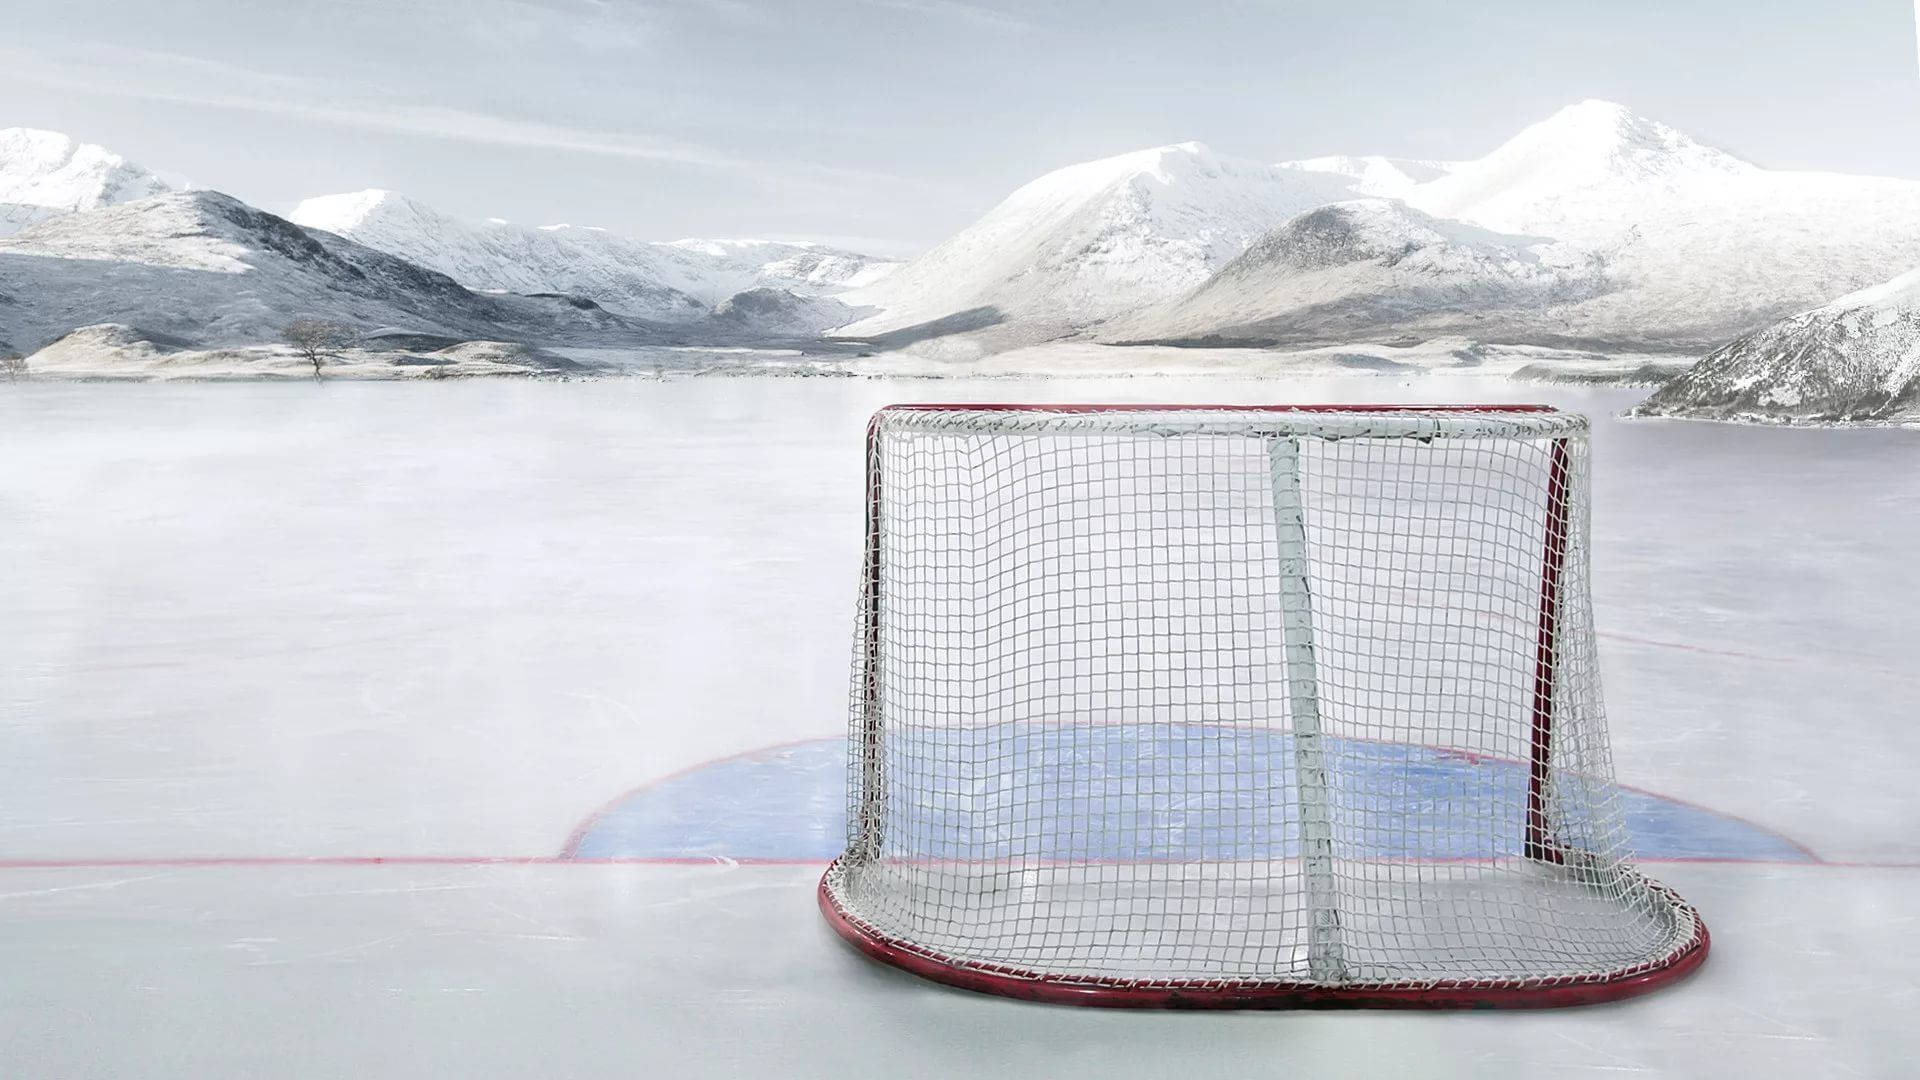 Ice Hockey Goal Background Background